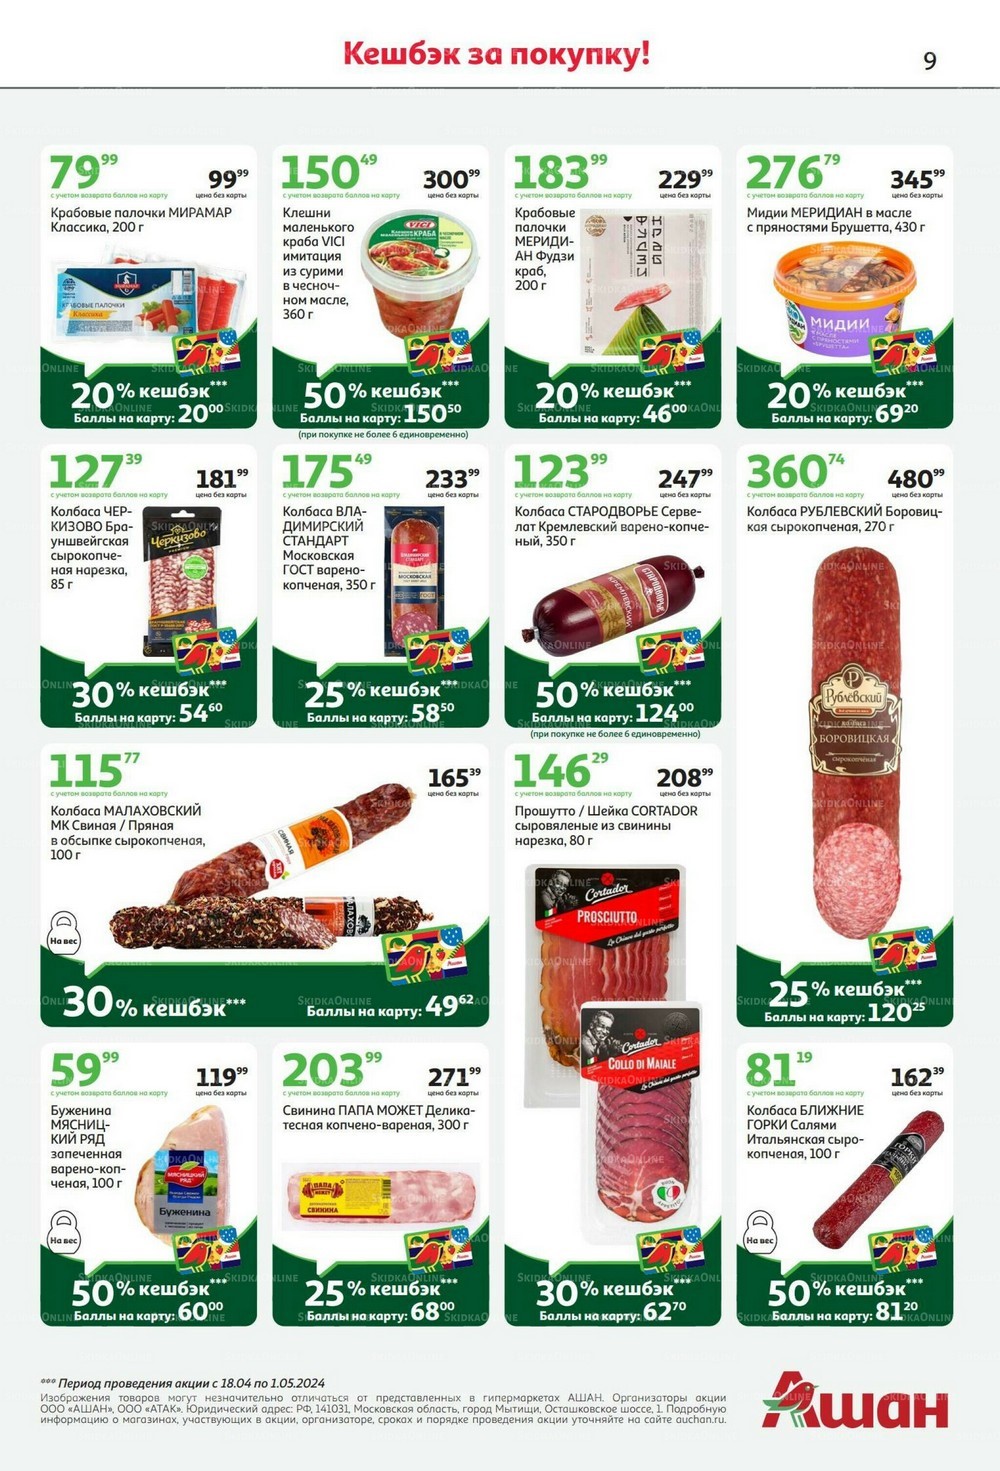 Auchan - новый каталог товаров со скидками в Ашане г. Москва. Каталог акций с ценами на товары